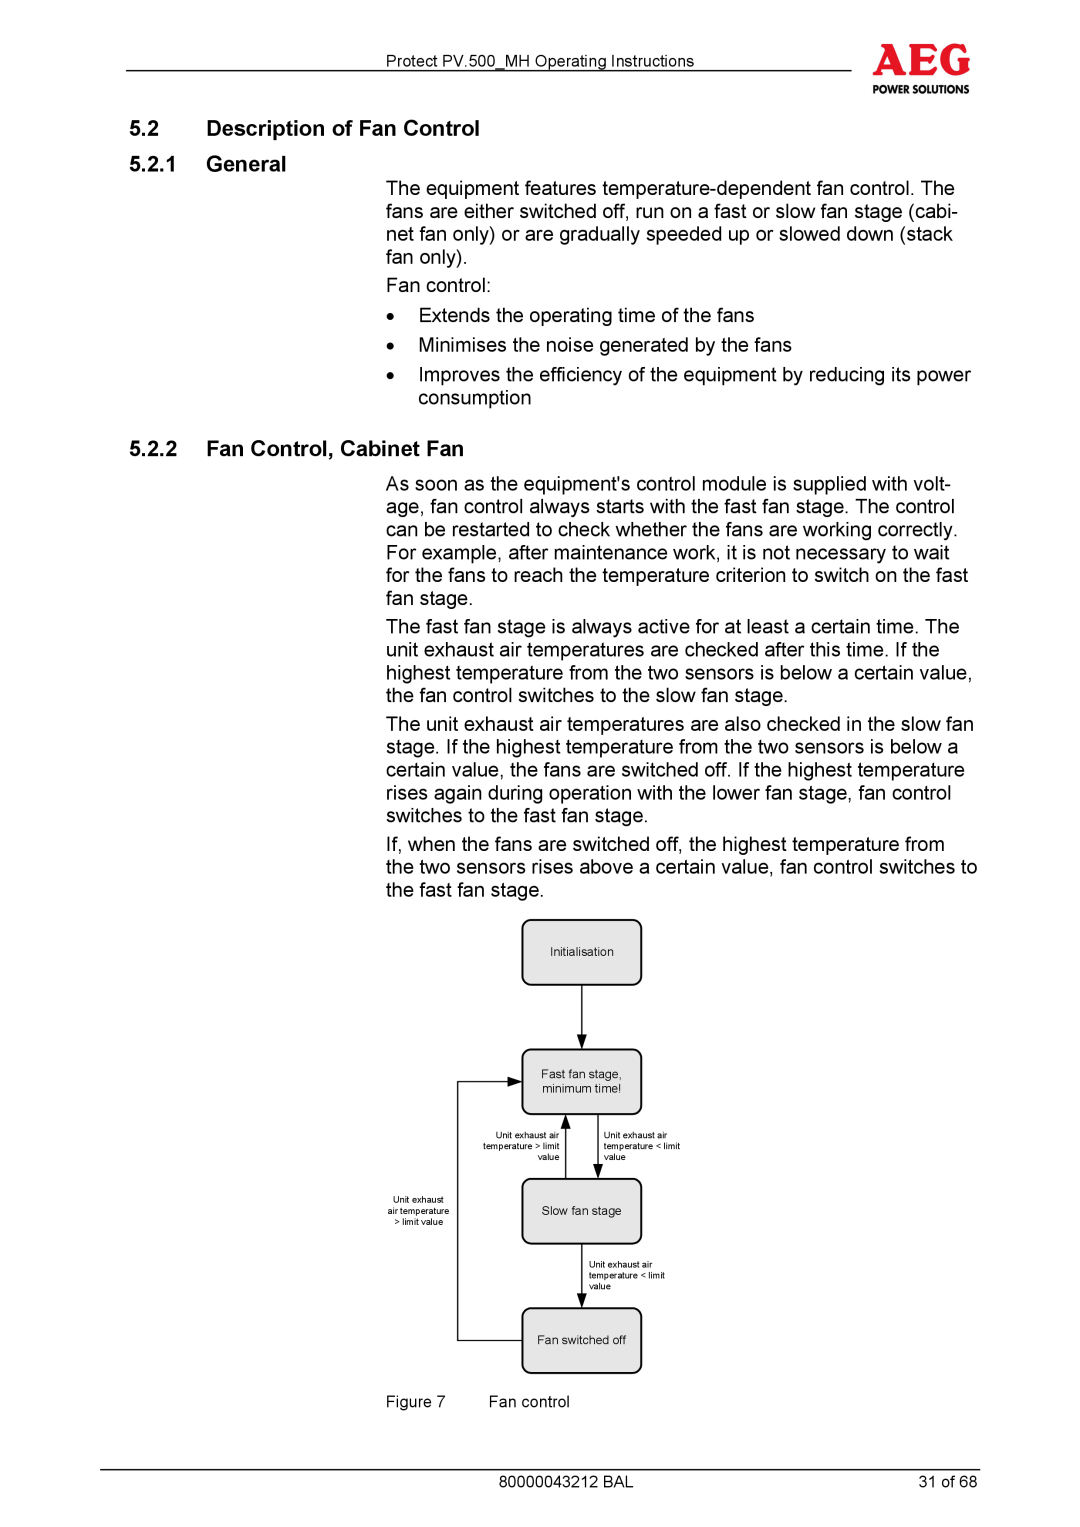 AEG PV.500-MH manual 5.2Description of Fan Control 5.2.1General, 5.2.2Fan Control, Cabinet Fan 